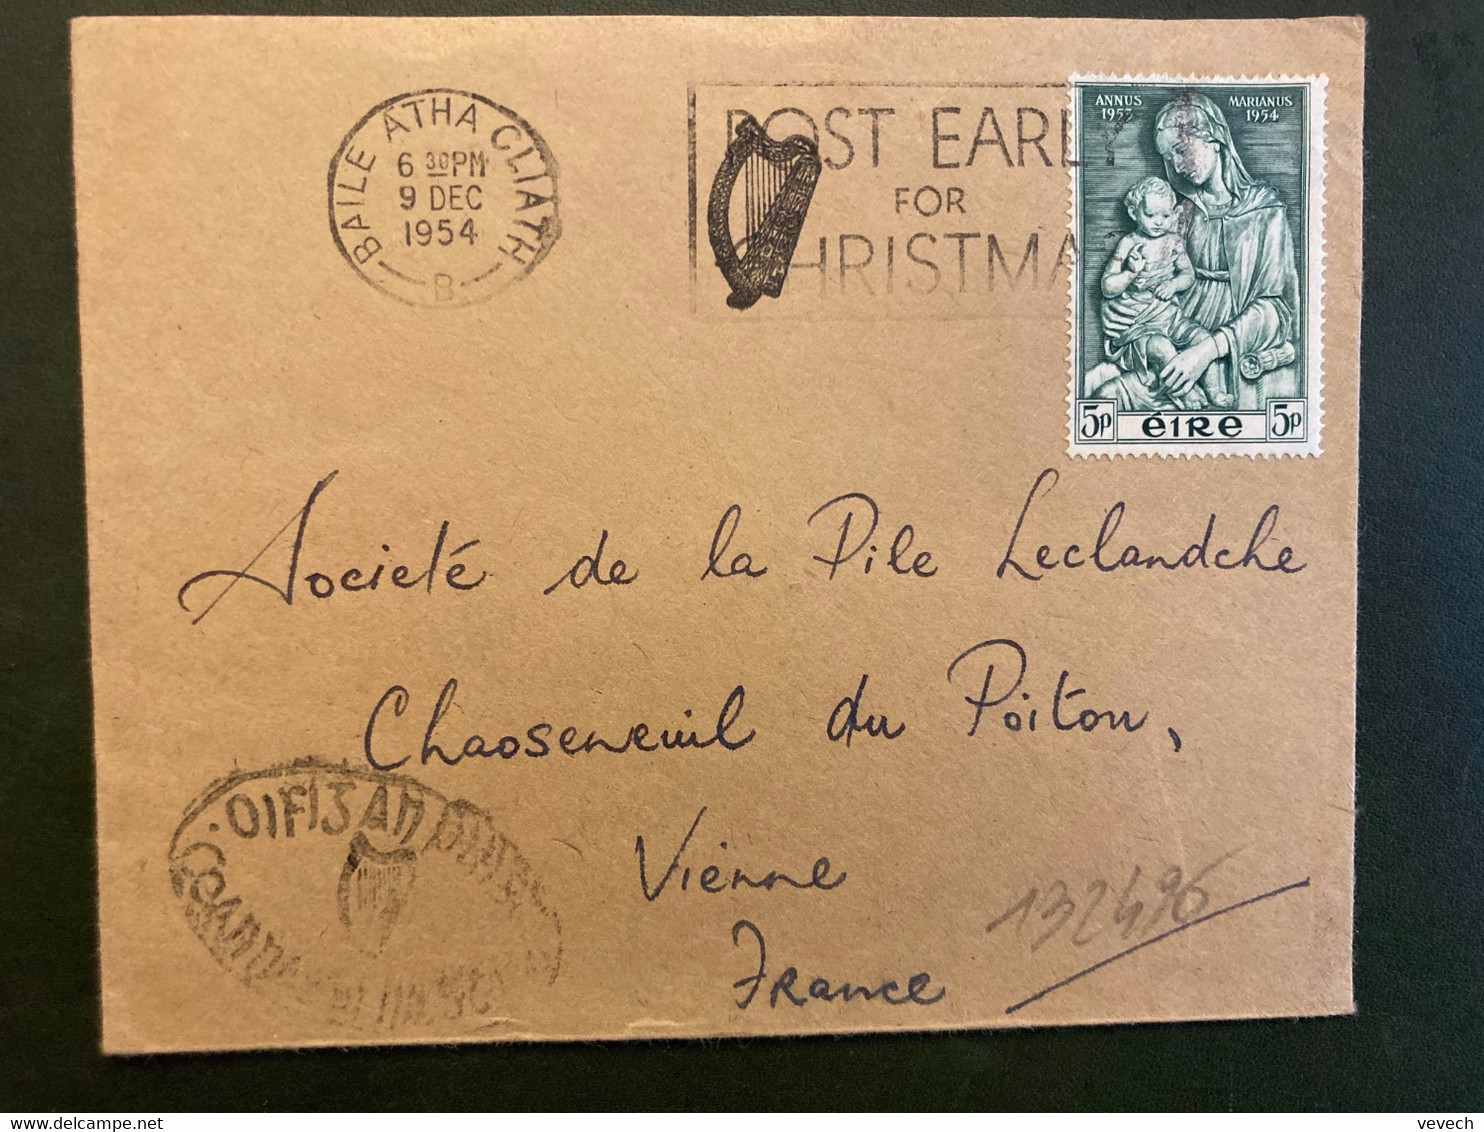 LETTRE Pour La FRANCE TP ANNUS MARIANUS 1953 1954 5p PBL.MEC.9 DEC 1954 BAILE ATHA CLIATH + HARPE - Lettres & Documents